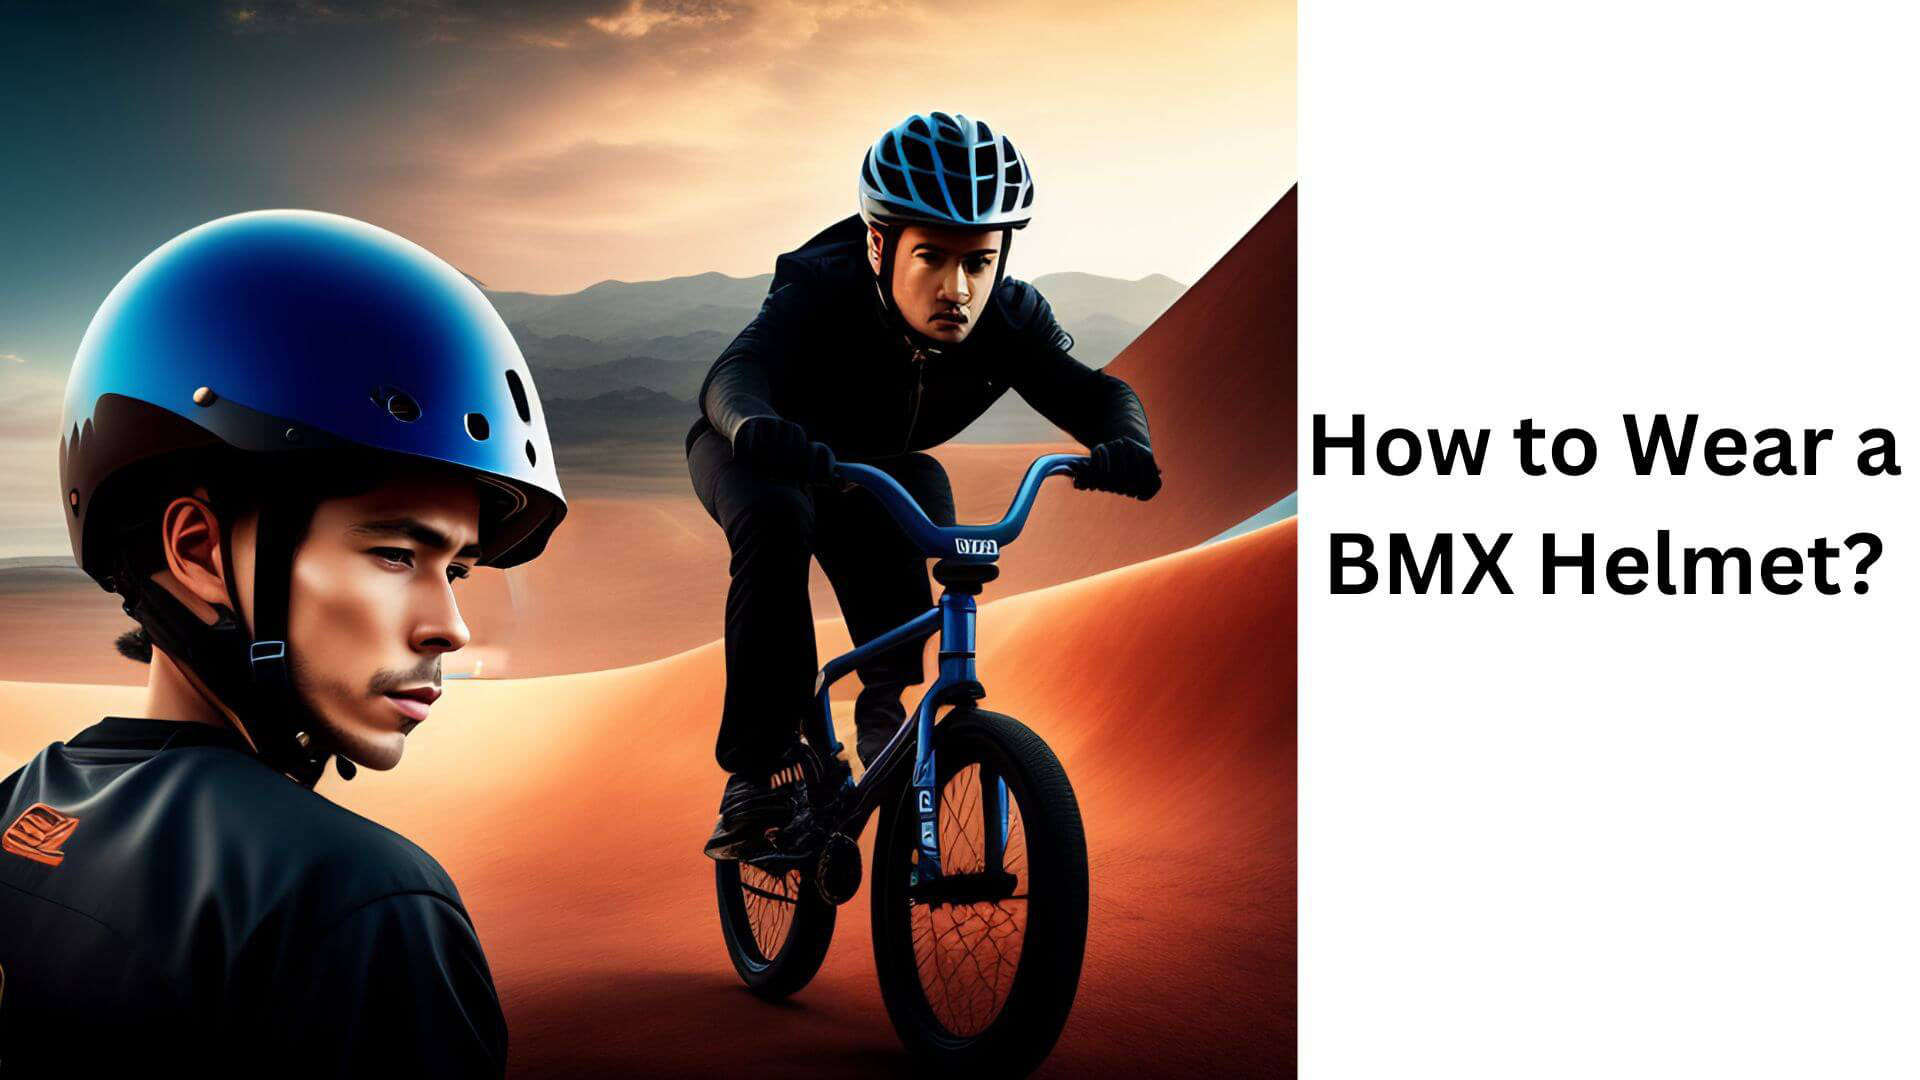 How to Wear a BMX Helmet?